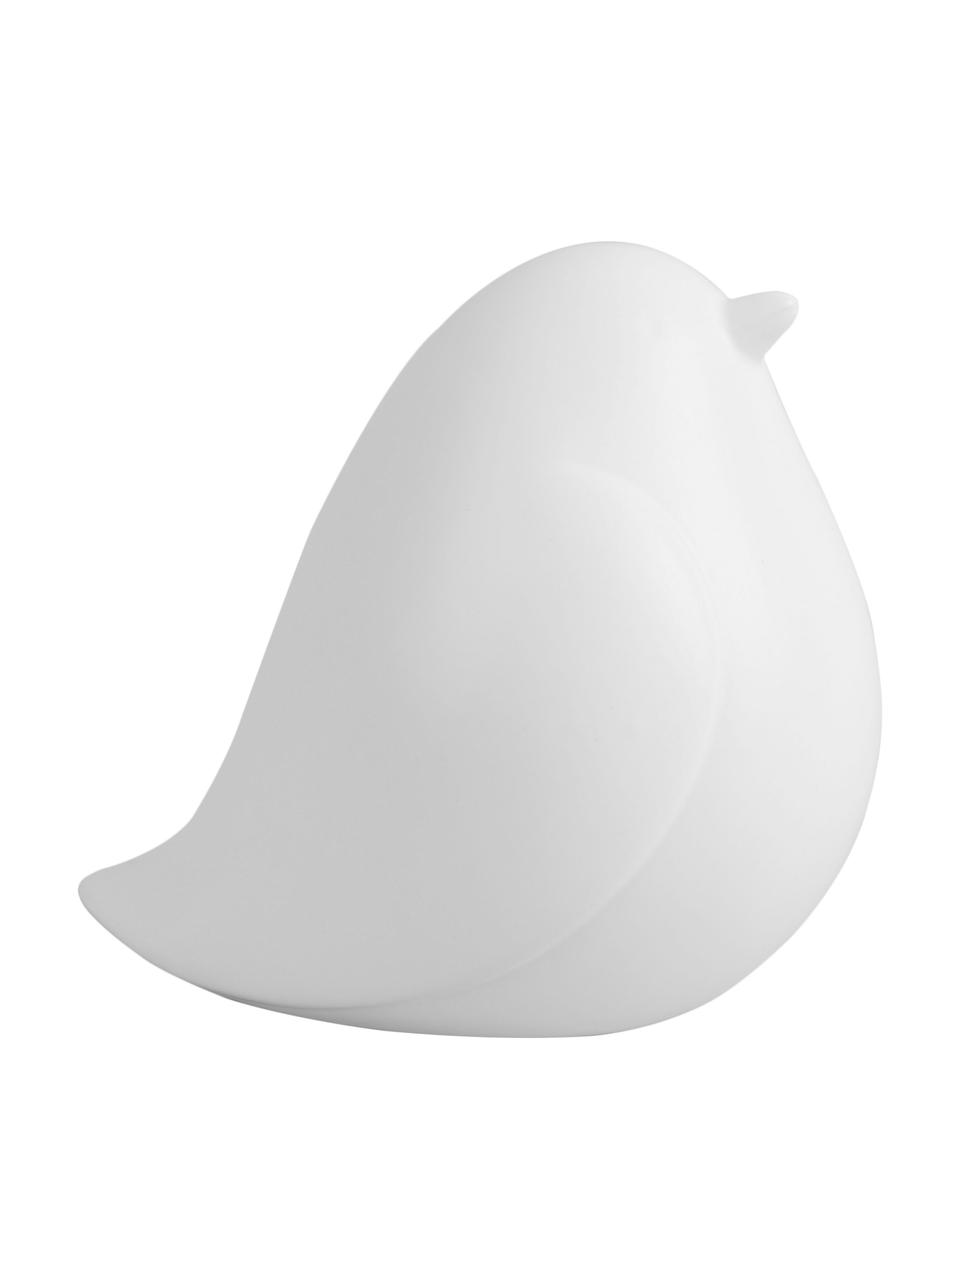 Dekoracja Fat Bird, Ceramika, Biały, S 14 x W 14 cm